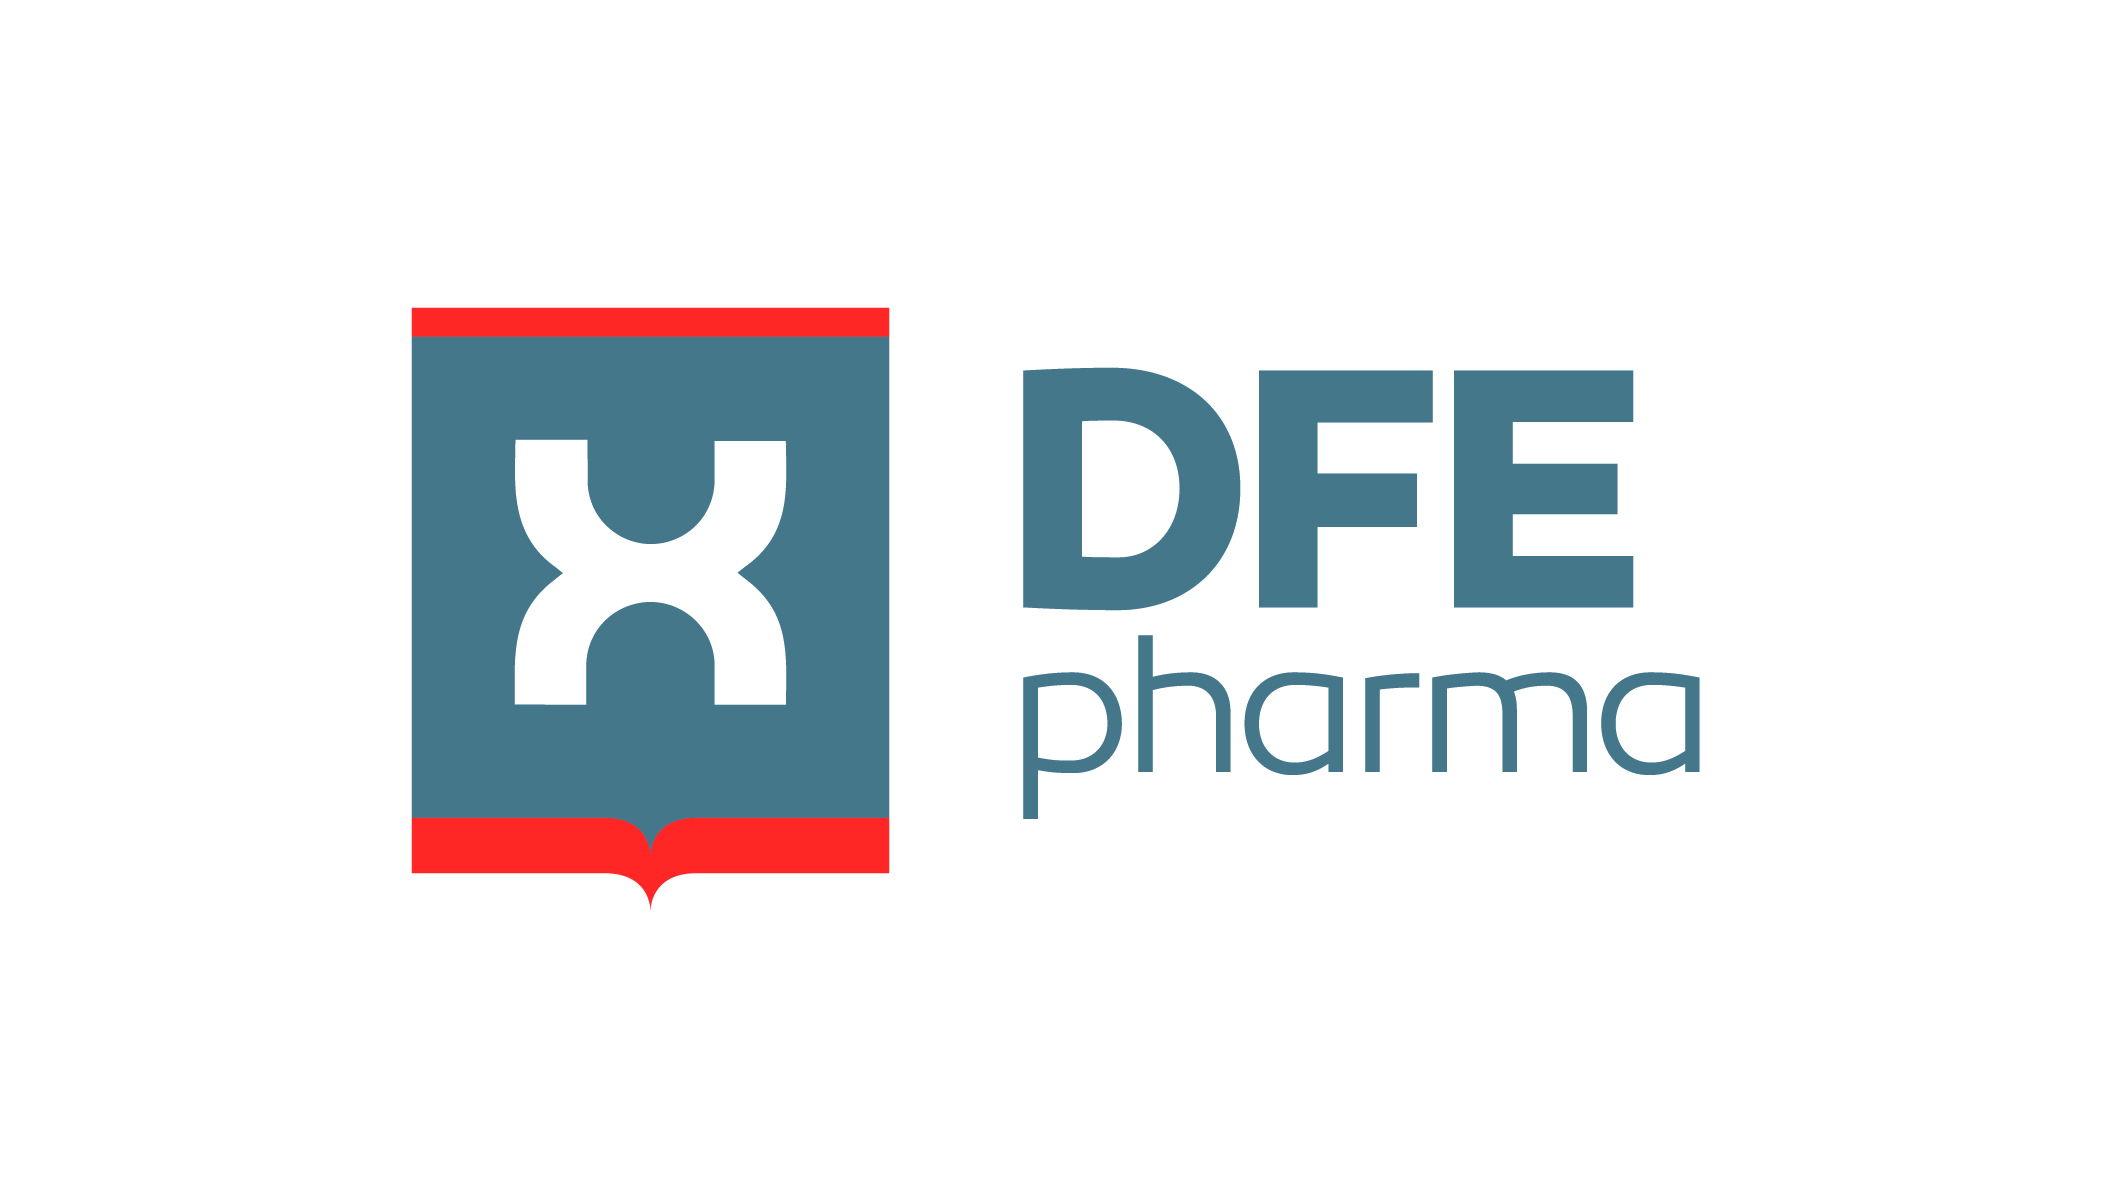 We Are DFE Pharma